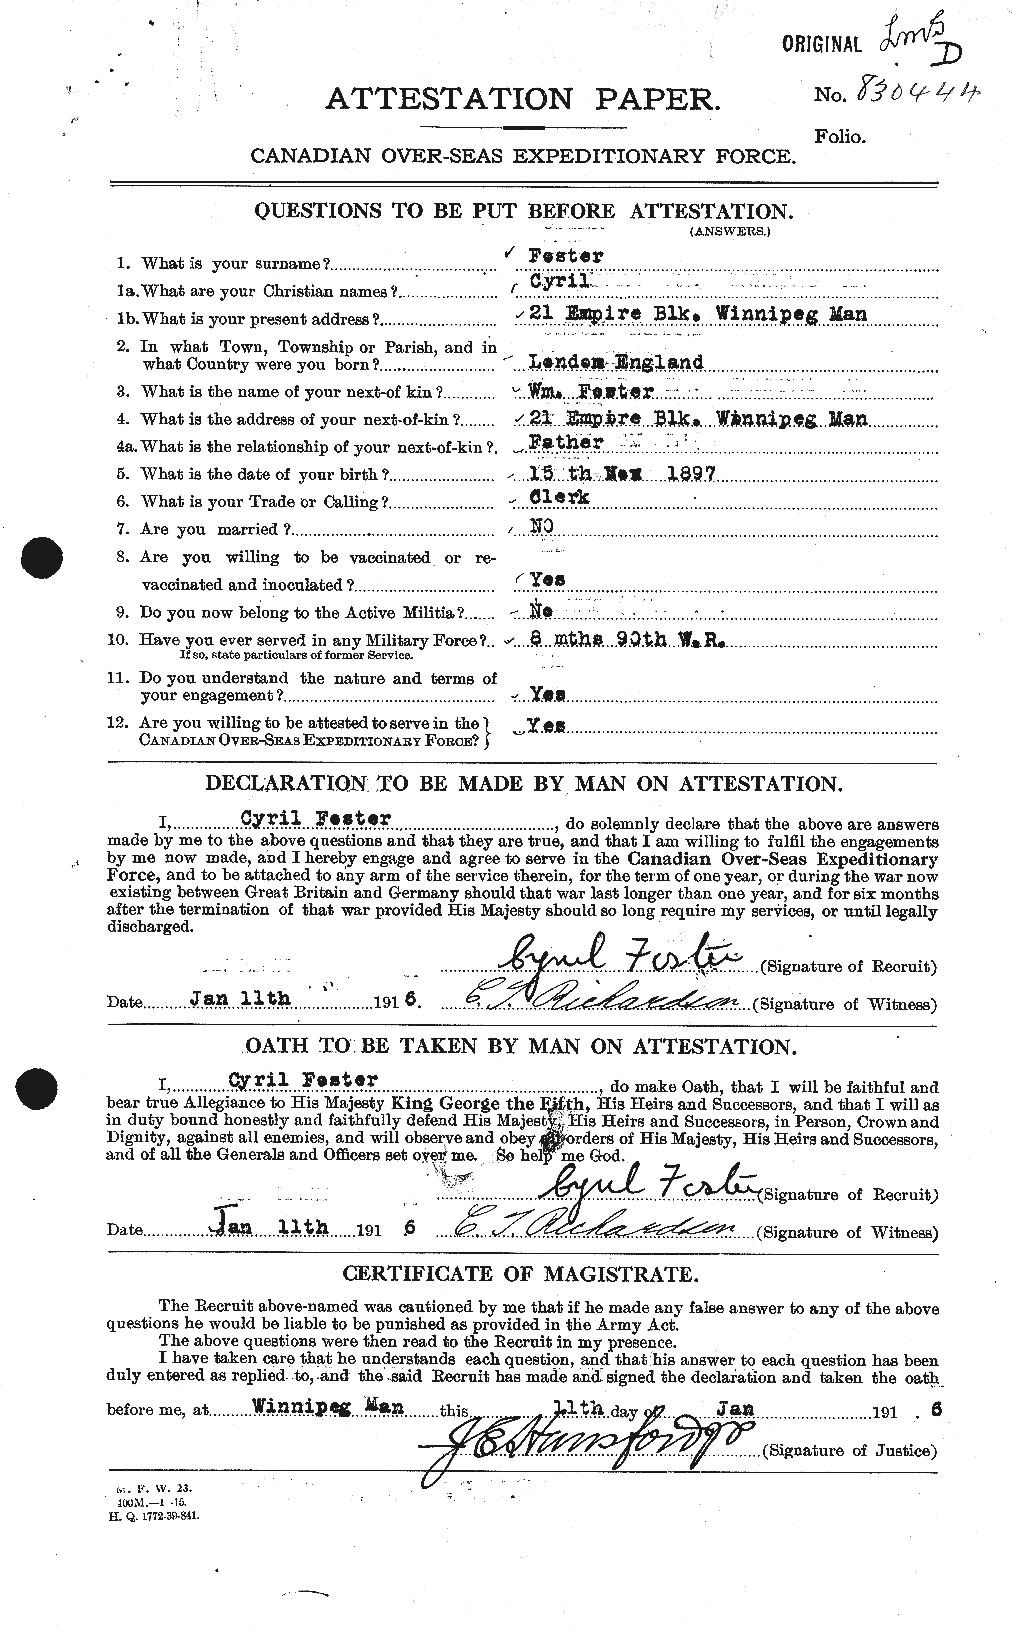 Dossiers du Personnel de la Première Guerre mondiale - CEC 330551a